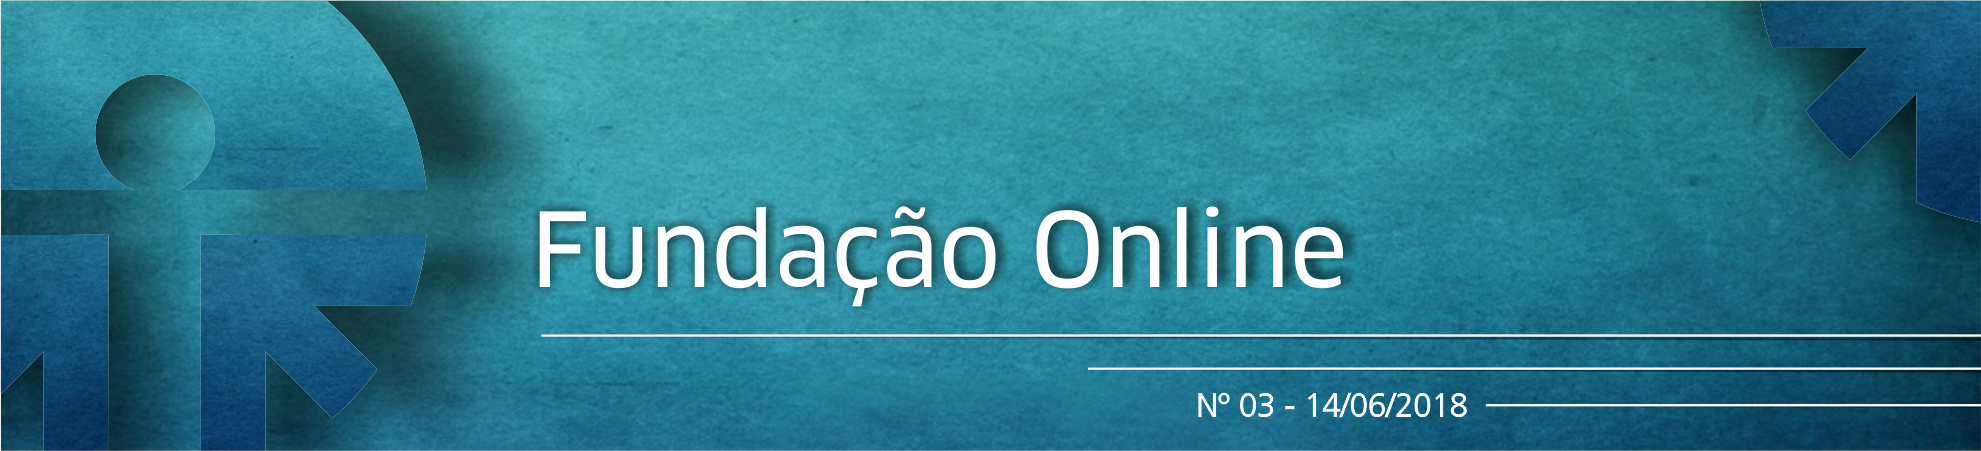 cabecalho_online_3